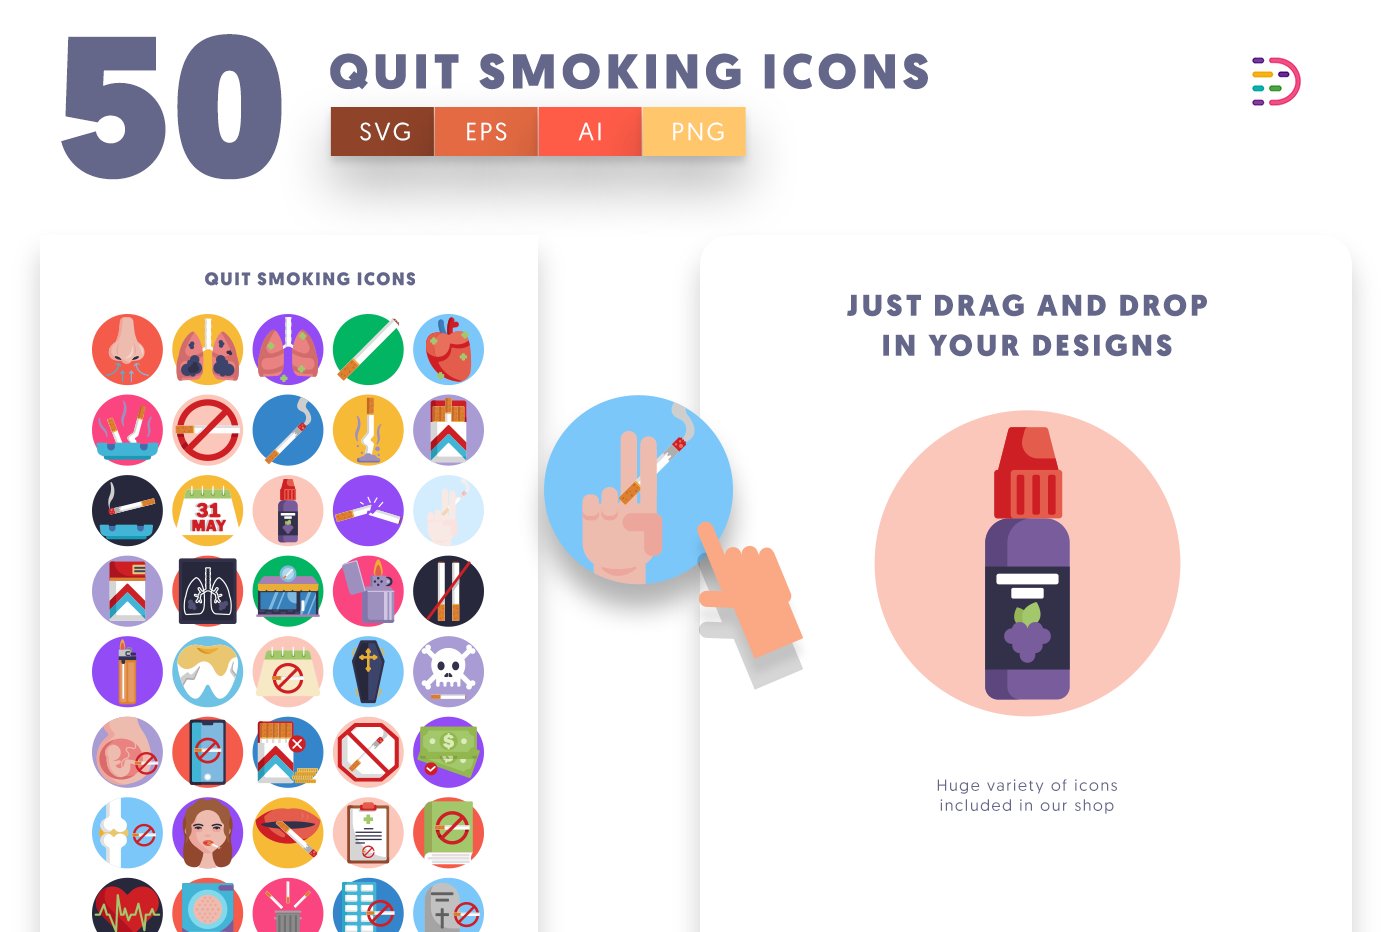 50-Quit Smoking-Icons